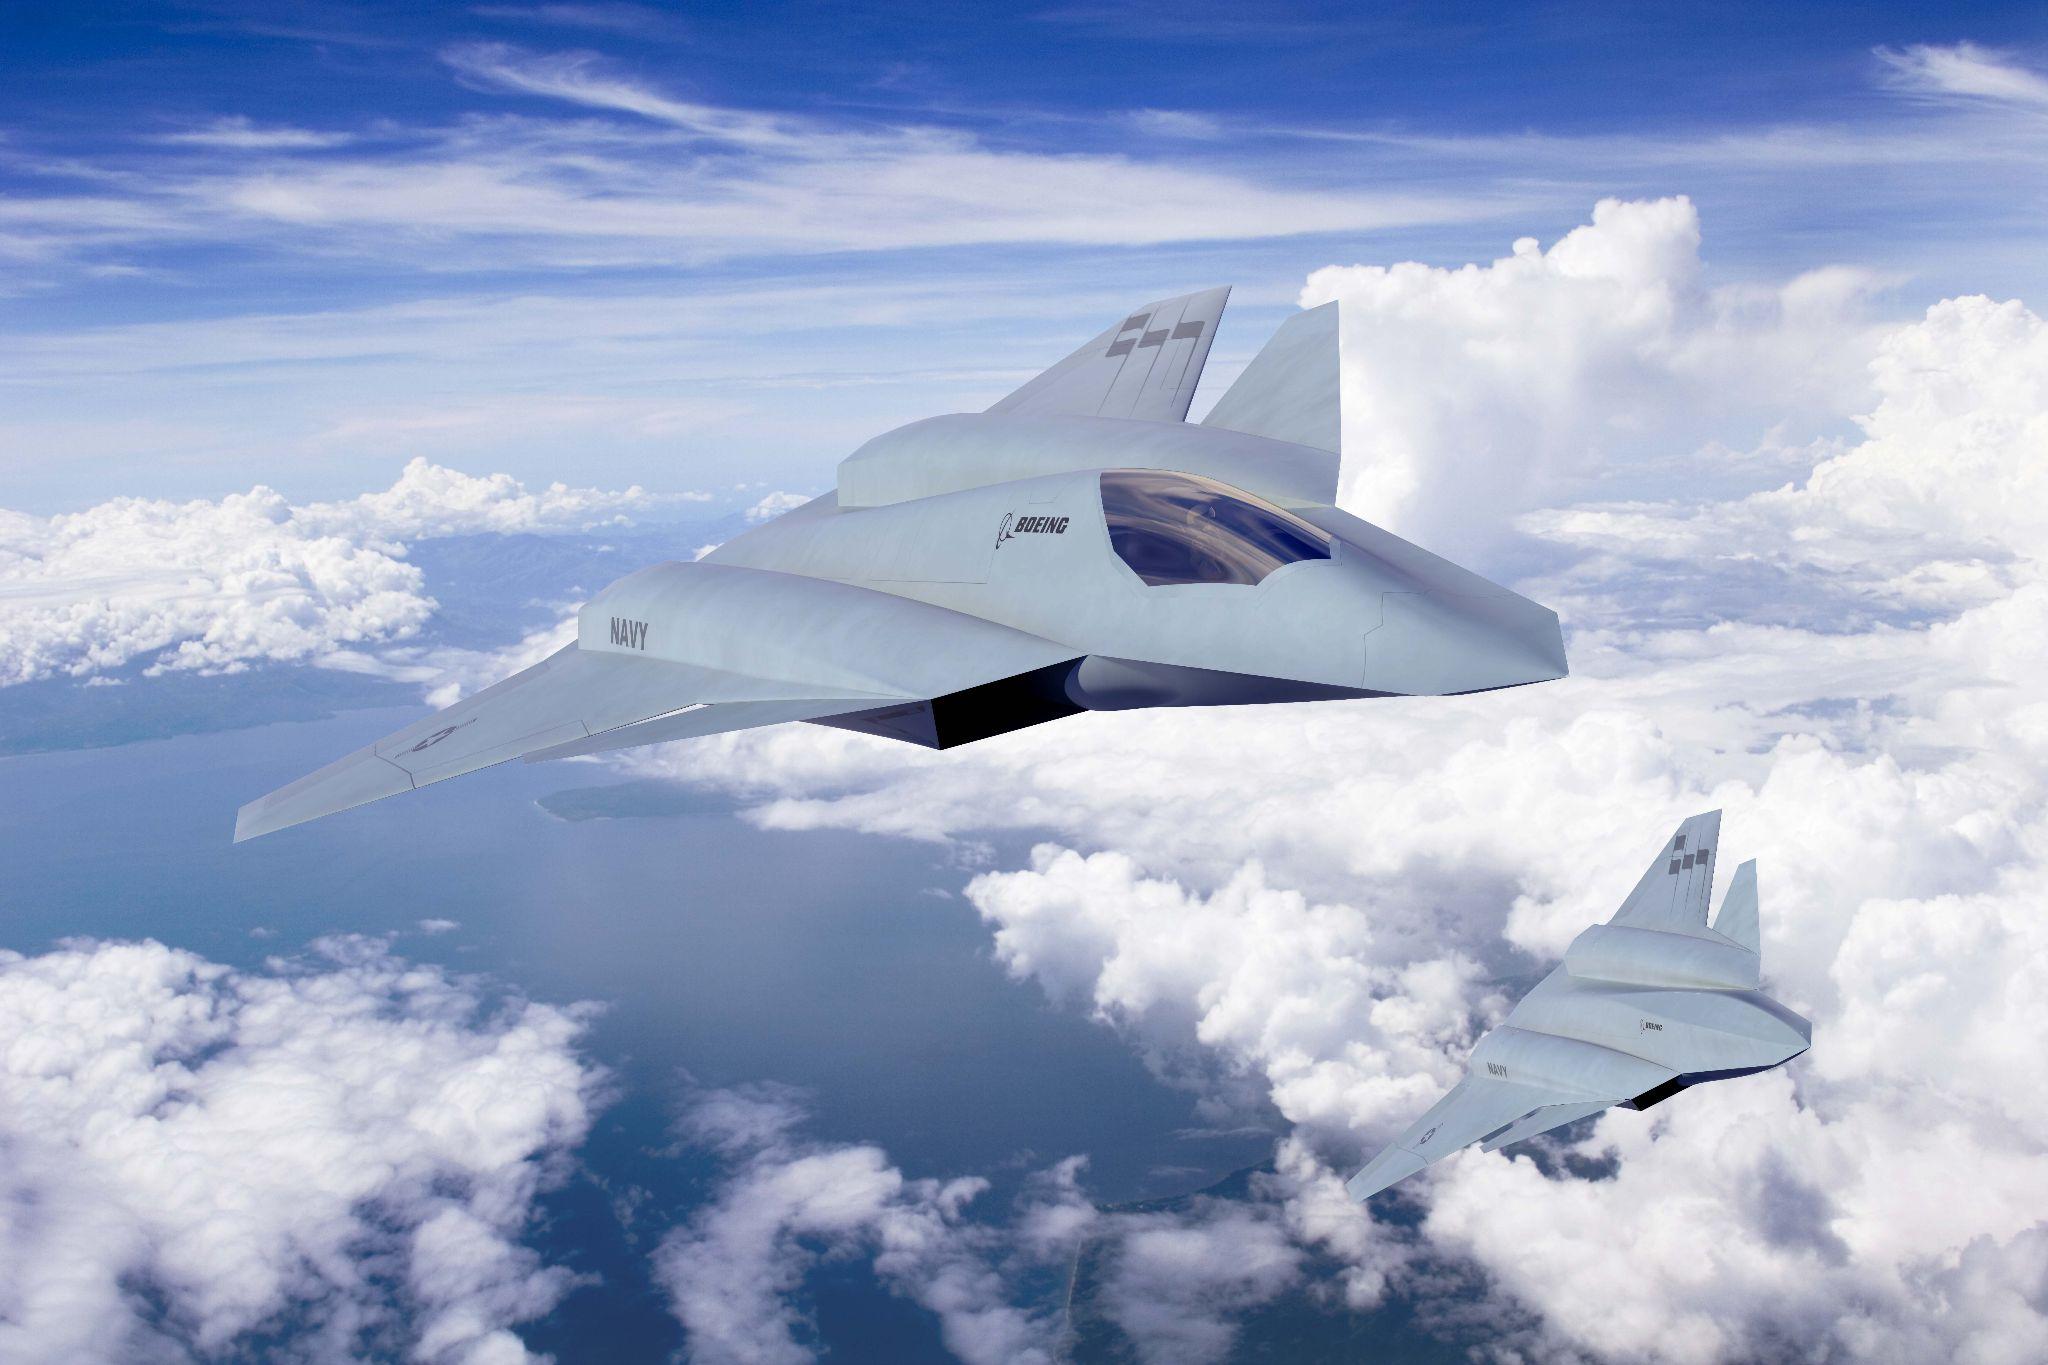 可以称歼20为专门针对未来空战而生的高端战斗机吗? 